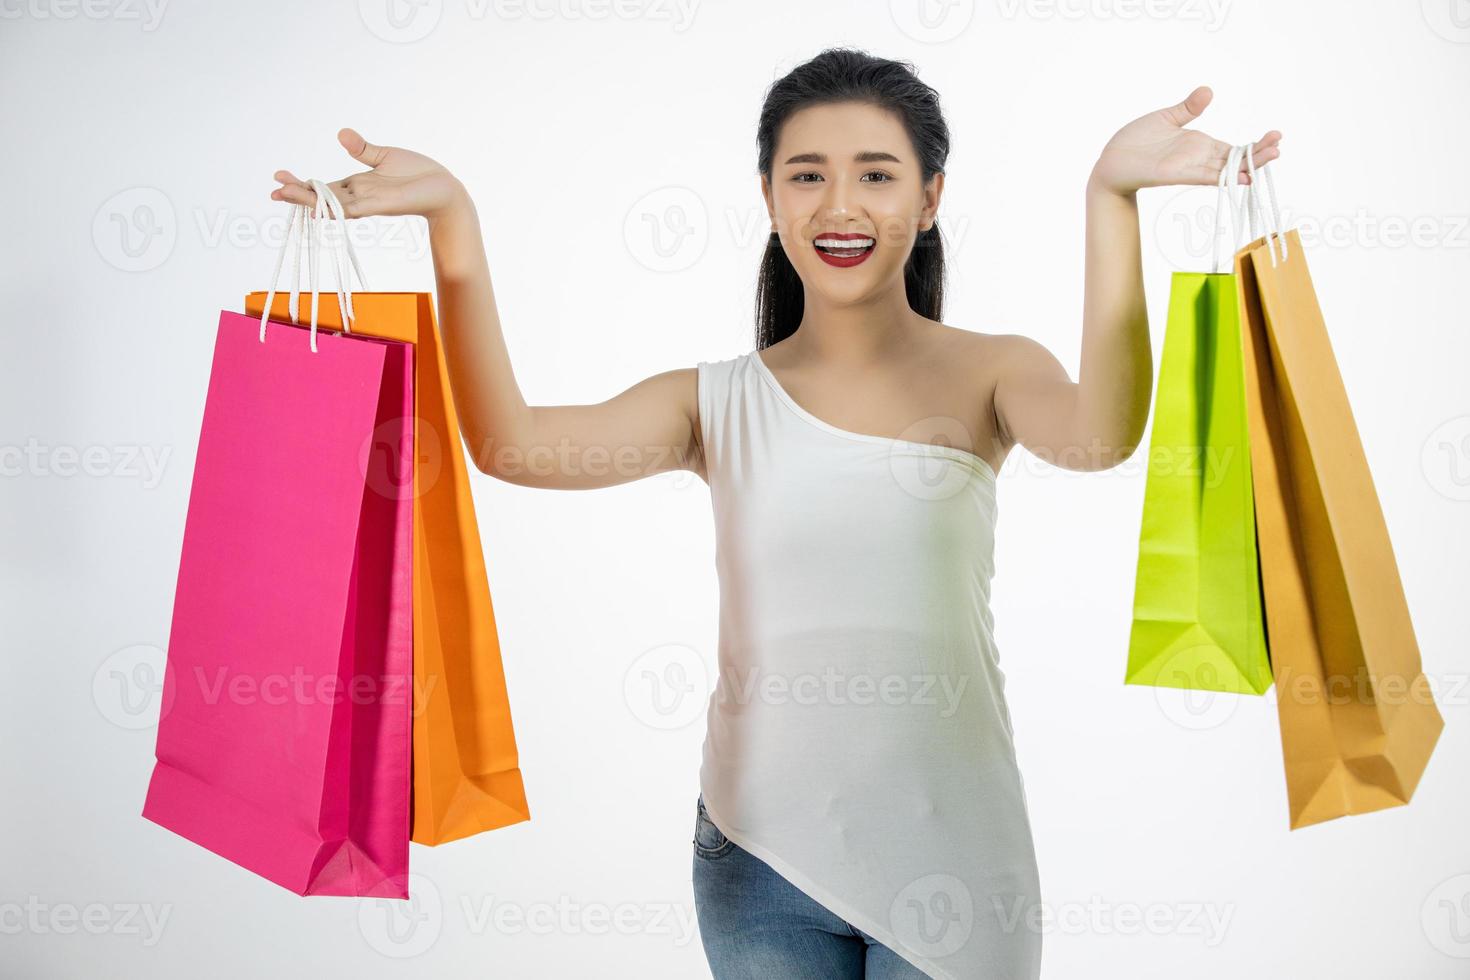 Linda garota asiática segurando sacolas de compras e sorrindo foto